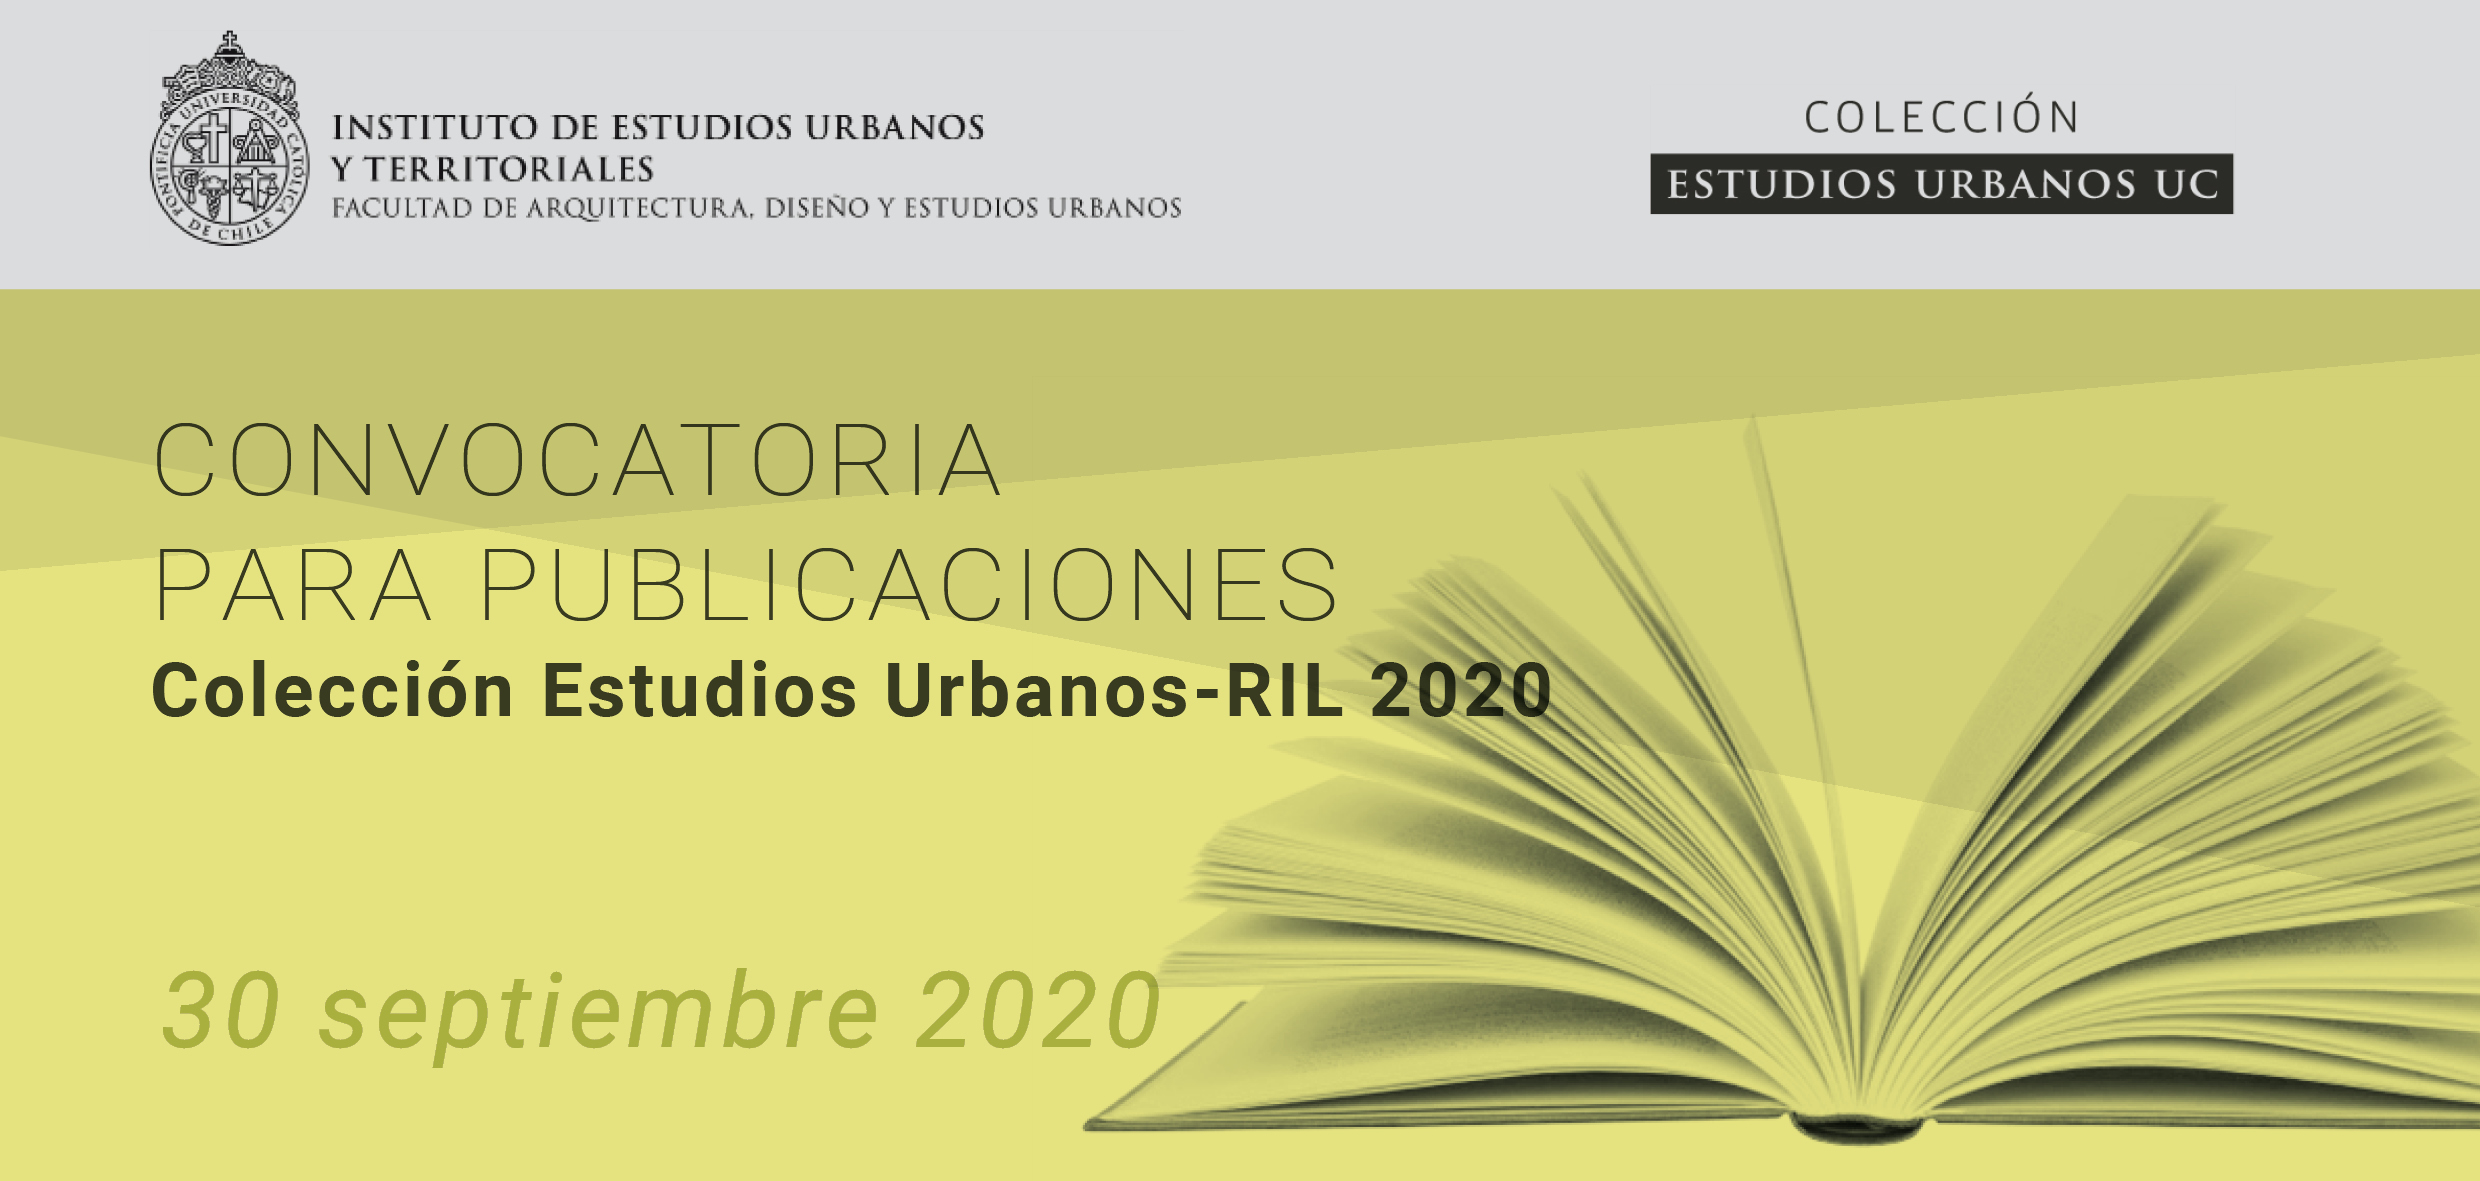 Convocatoria para publicaciones Colección Estudios Urbanos-RIL 2020